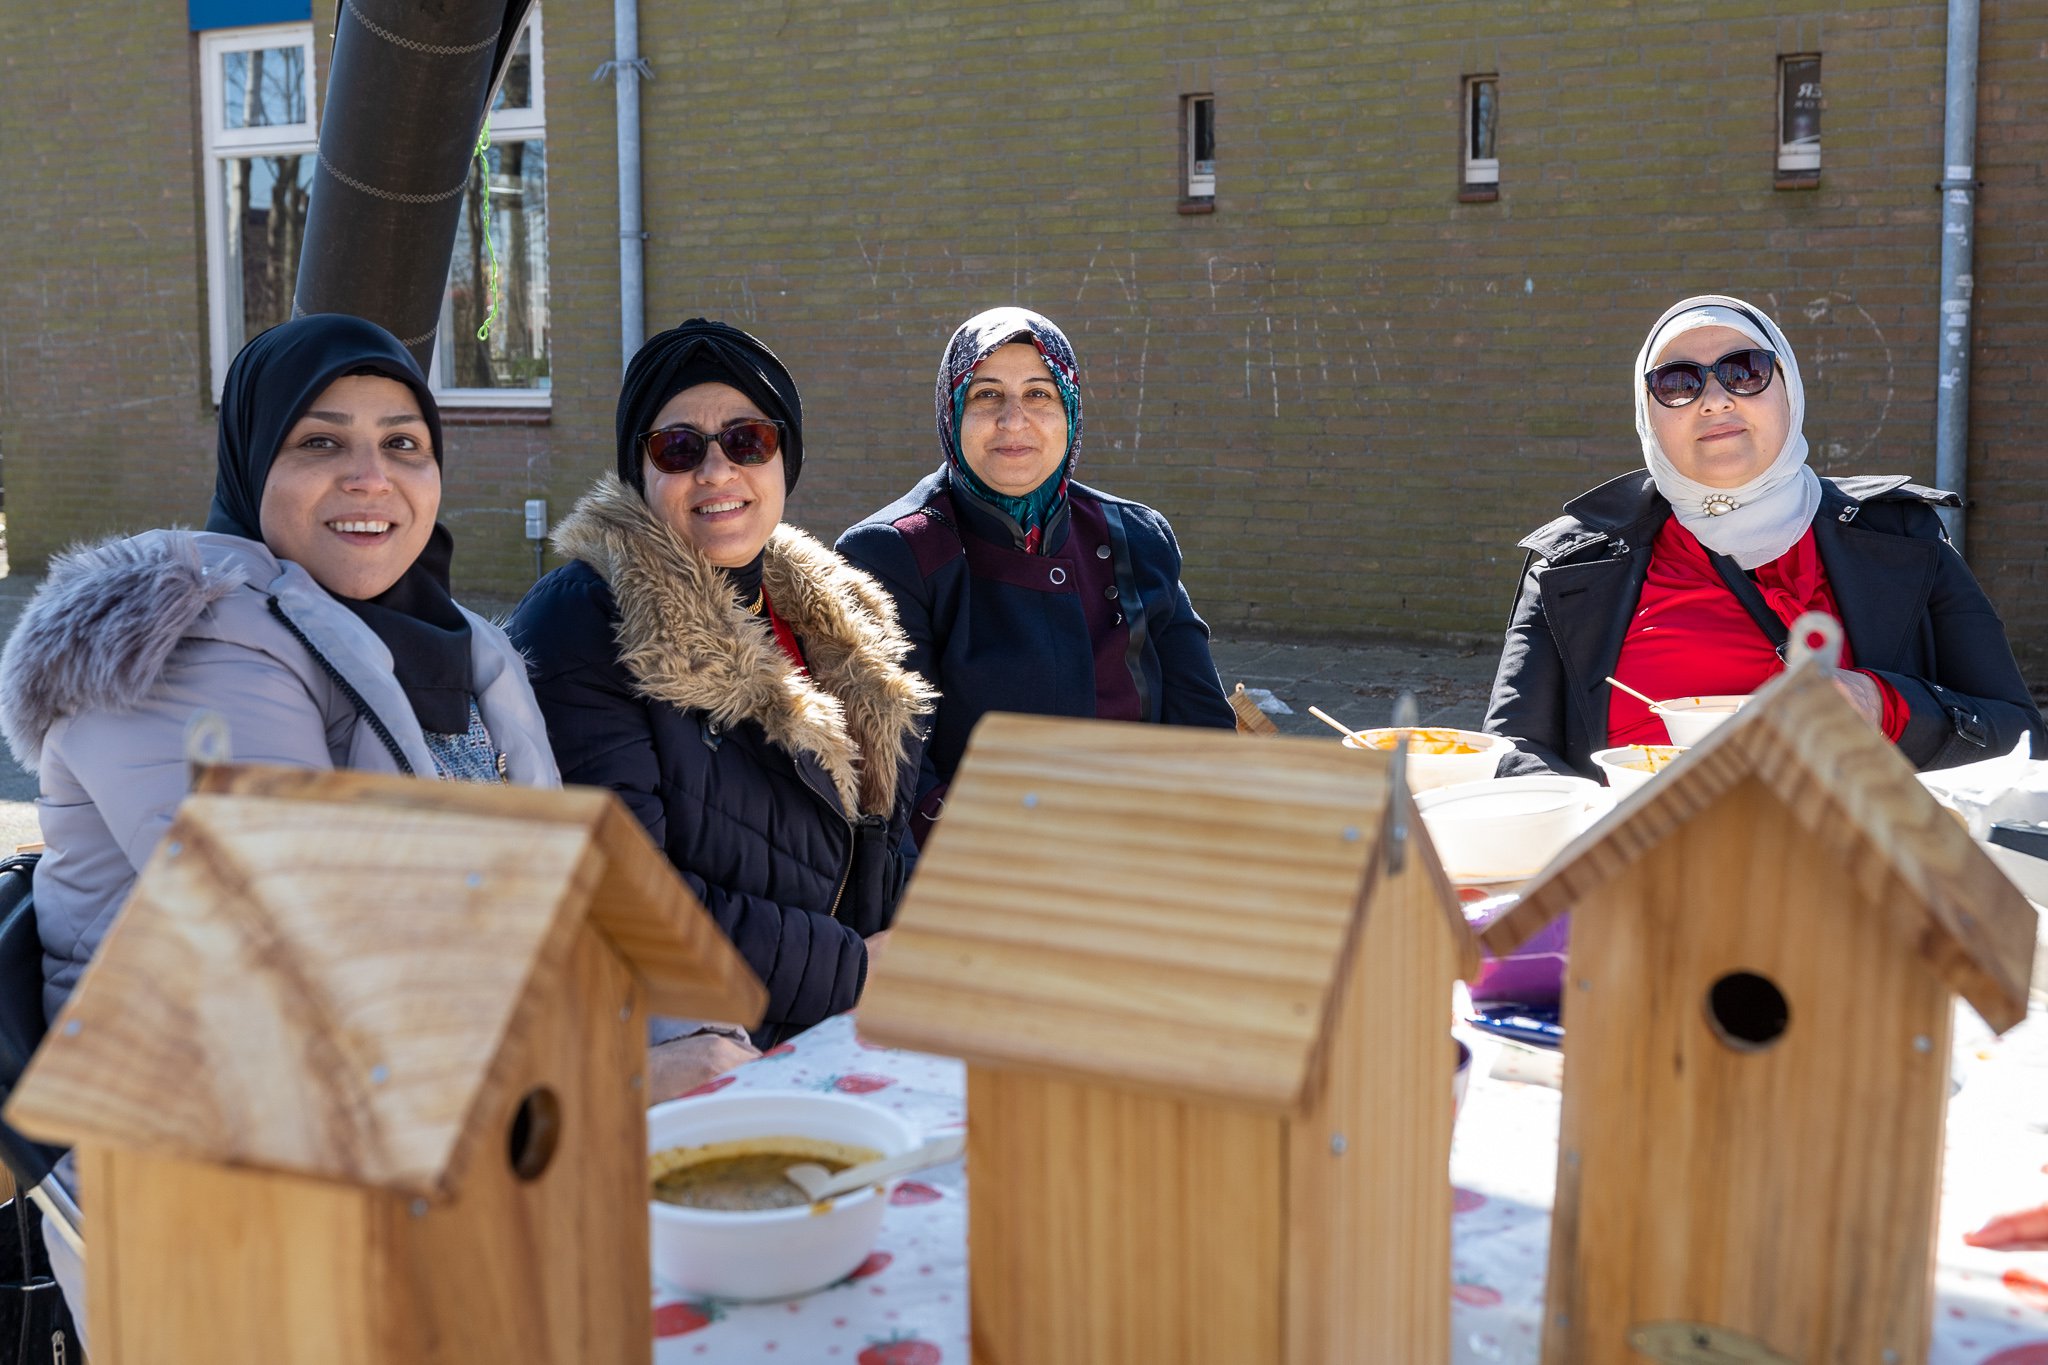 Vier vrouwen poseren trots achter de zelf gemaakte vogelhuisjes